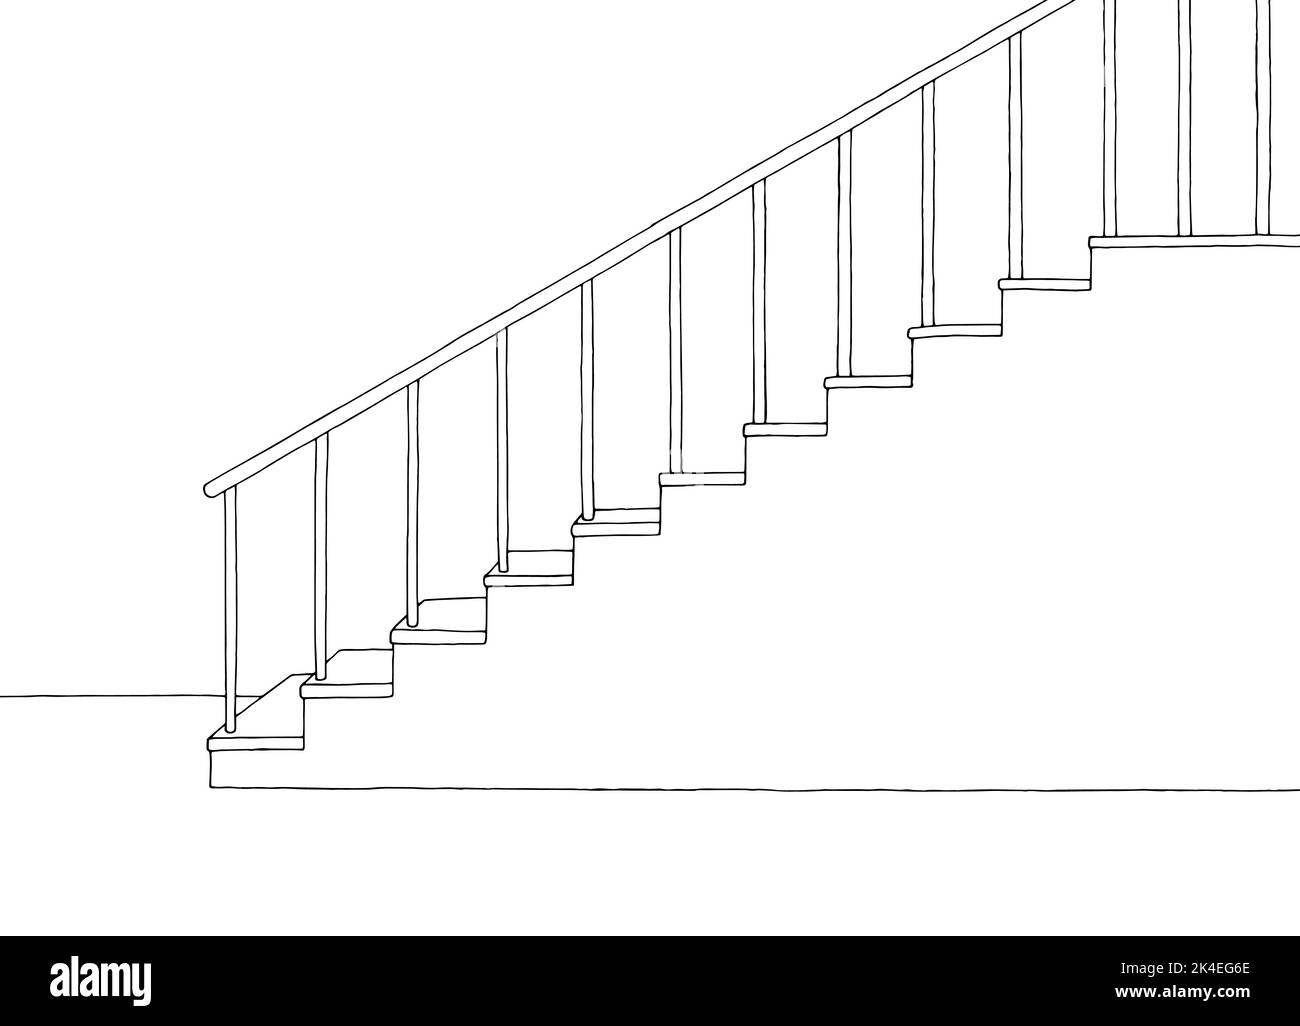 Image de pièce vide noir blanc dessin d'intérieur vecteur d'illustration Illustration de Vecteur